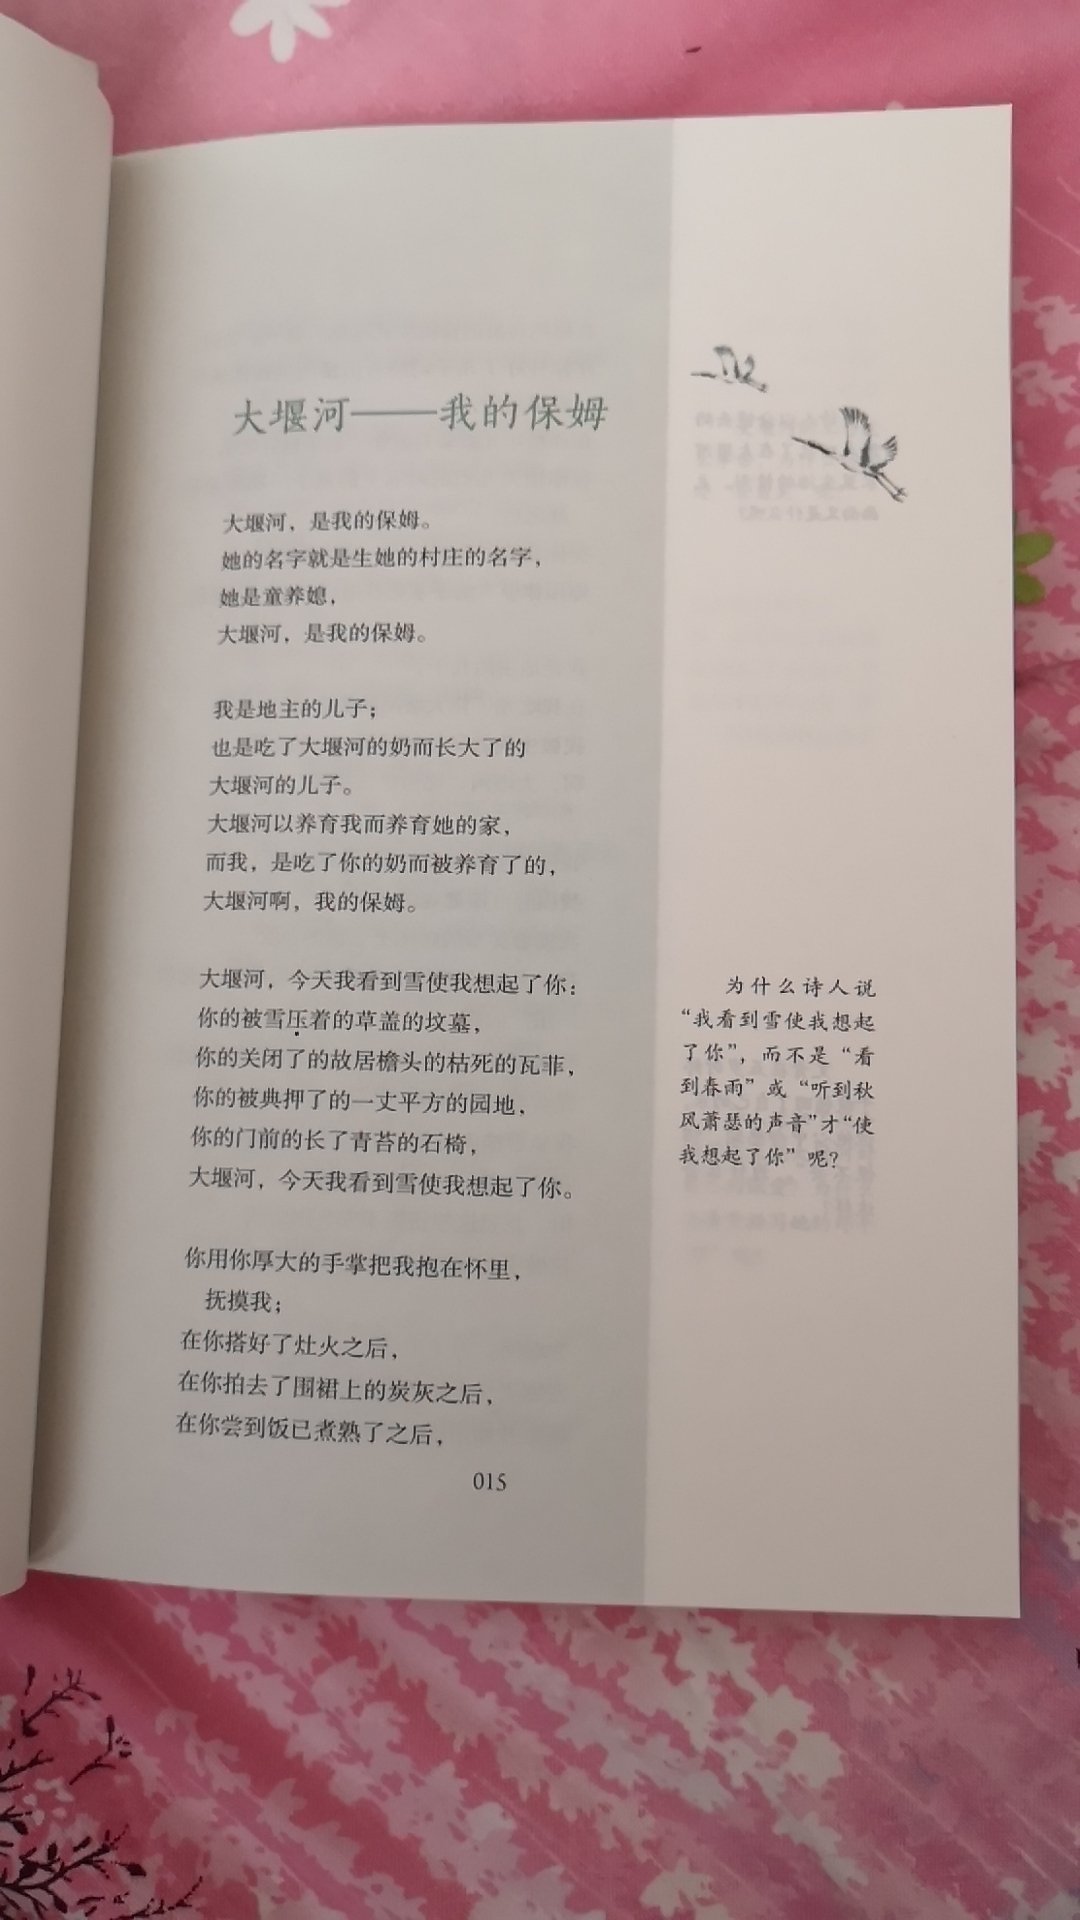 这本书里，有大家最熟悉的《大堰河——我的保姆》，是现代诗人艾青于1933年1月14日写的一首诗，被选入人教版语文课本。全诗分为四部分。作者通过对自己的乳母的回忆与追思，抒发了对贫苦农妇大堰河的怀念之情、感激之情和赞美之情，从而激发人们对旧中国广大劳动妇女悲惨命运的同情，对这“不公道的世界”的强烈仇恨。印刷清晰，孩子很喜欢。